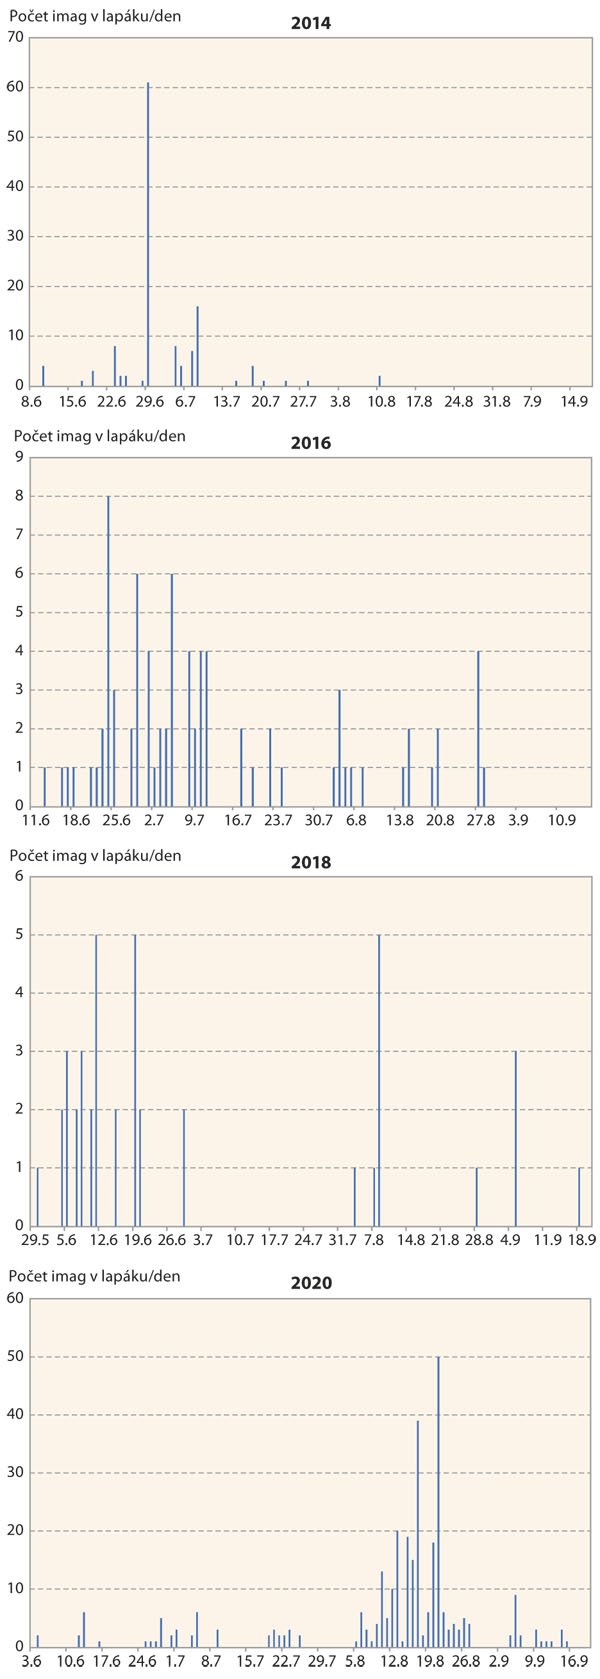 Graf: Nálety imag zavíječe kukuřičného do světelného lapače v Oblekovicích v letech 2014–2020 (zdroj ÚKZÚZ)	